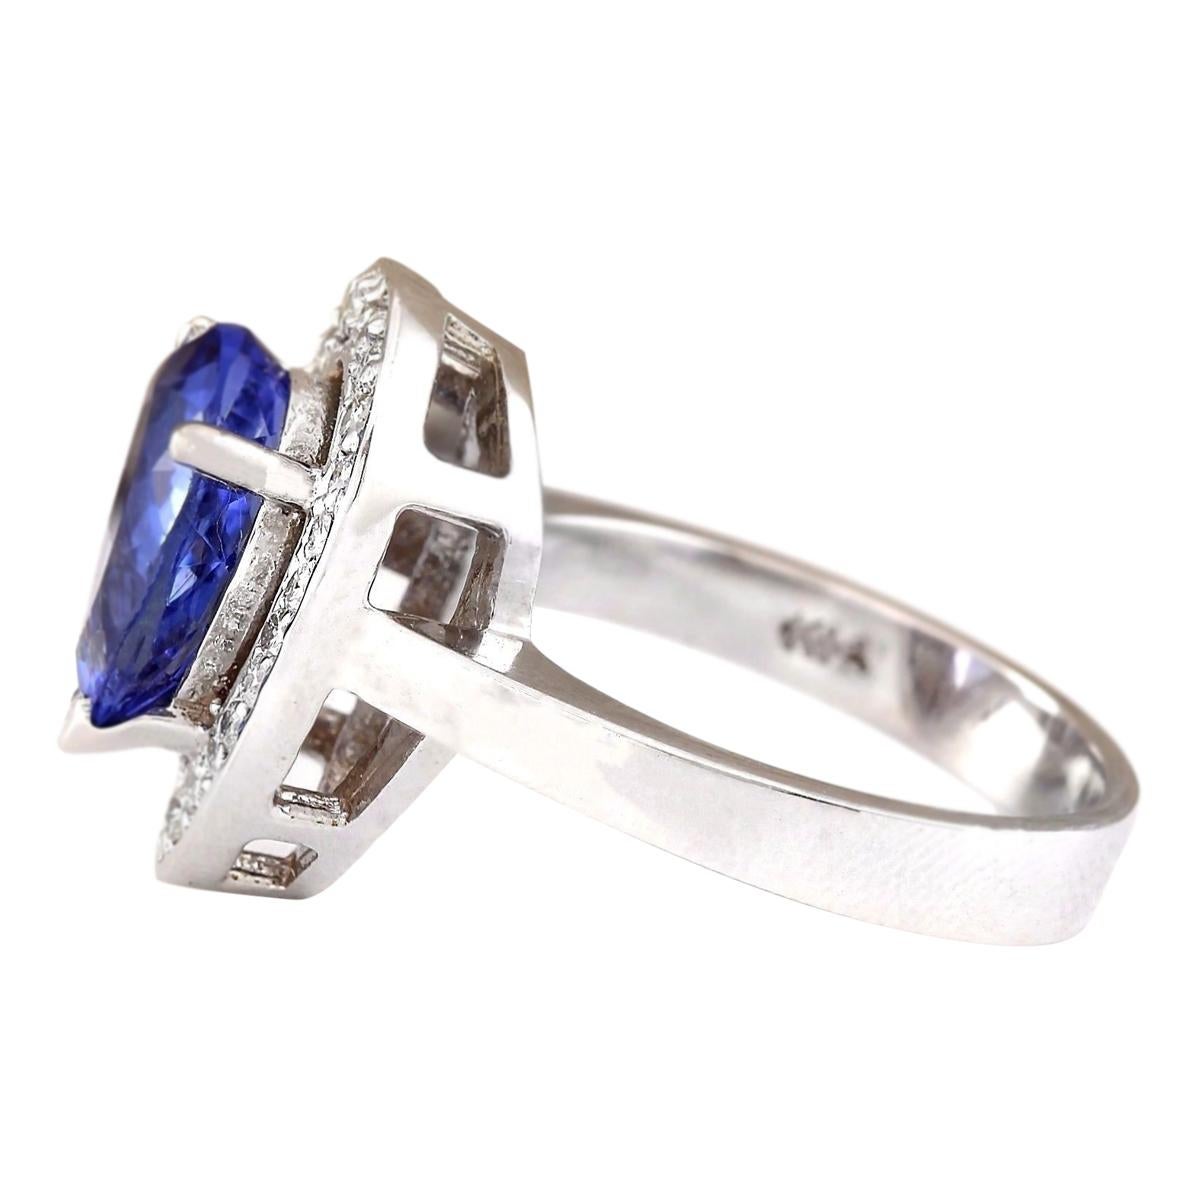 3.13 Carat Natural Tanzanite 14 Karat White Gold Diamond Ring
Stamped: 14K White Gold
Total Ring Weight: 6.3 Grams
Total Natural Tanzanite Weight is 2.73 Carat (Measures: 10.00x8.00 mm)
Color: Blue
Total Natural Diamond Weight is 0.40 Carat
Color: